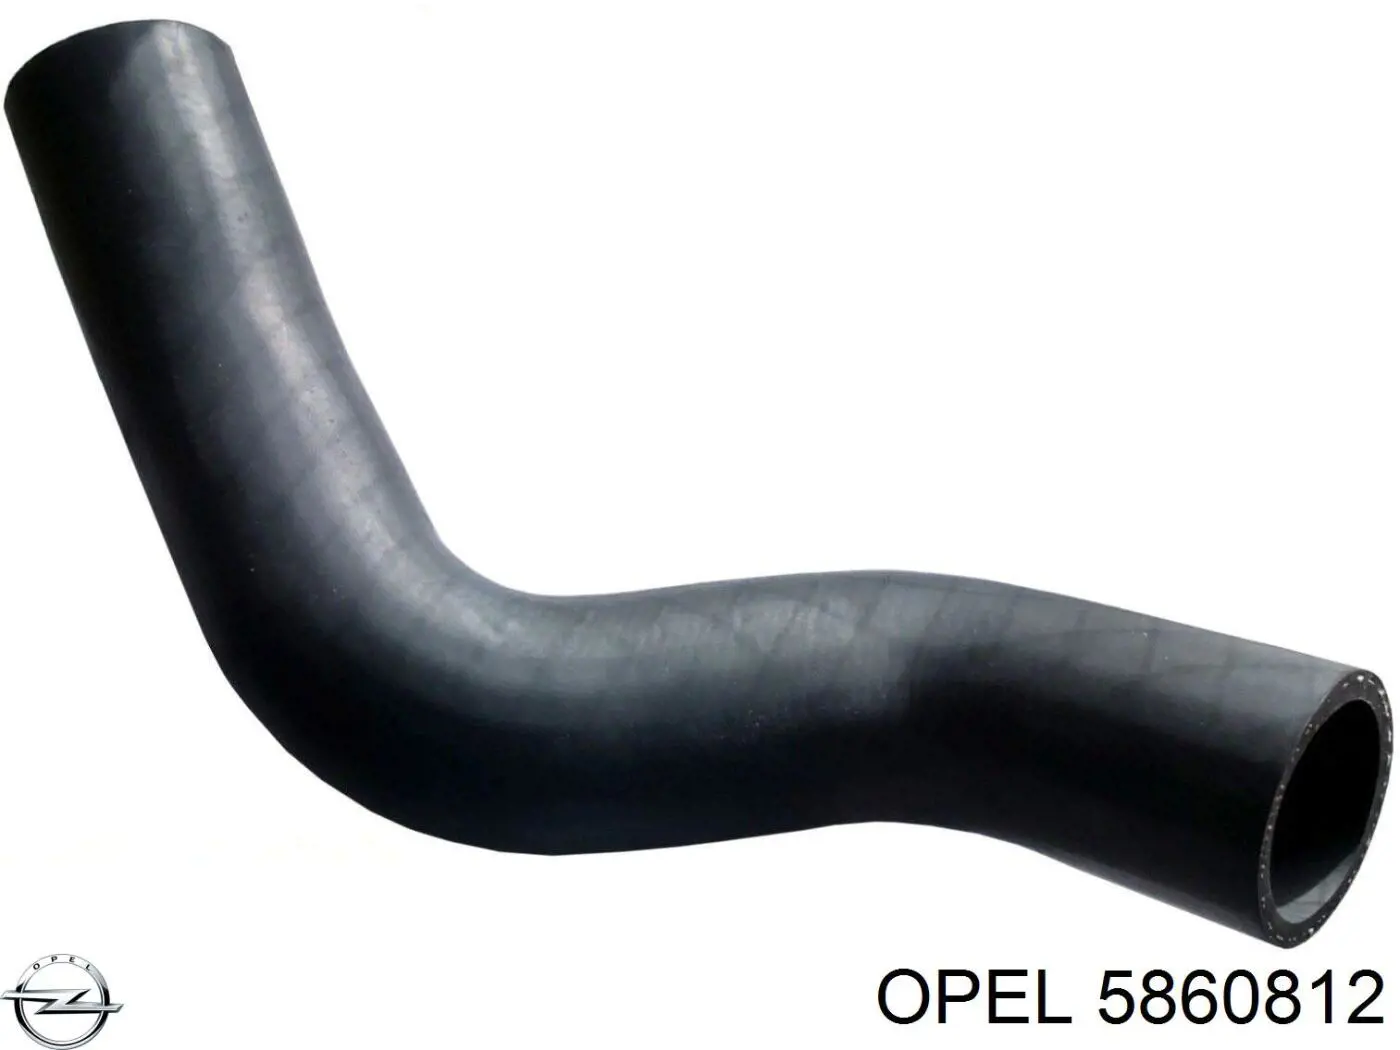 5860812 Opel